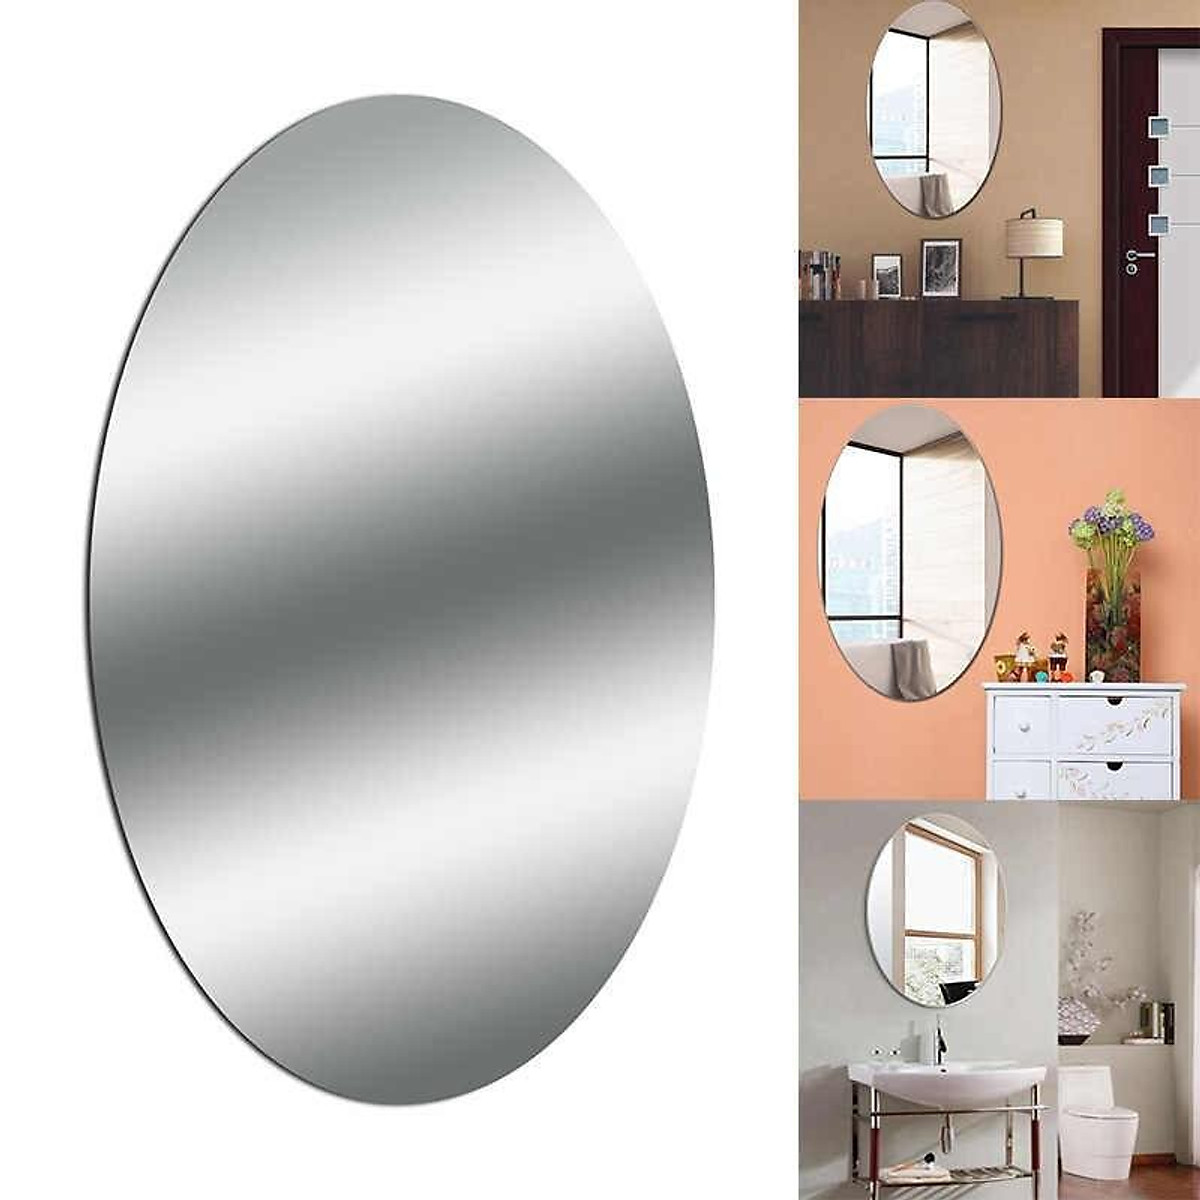 Gương dán tường bình BẦU DỤC 42x27cm - Gương Dán Tường Acrylic 3d Hình Oval